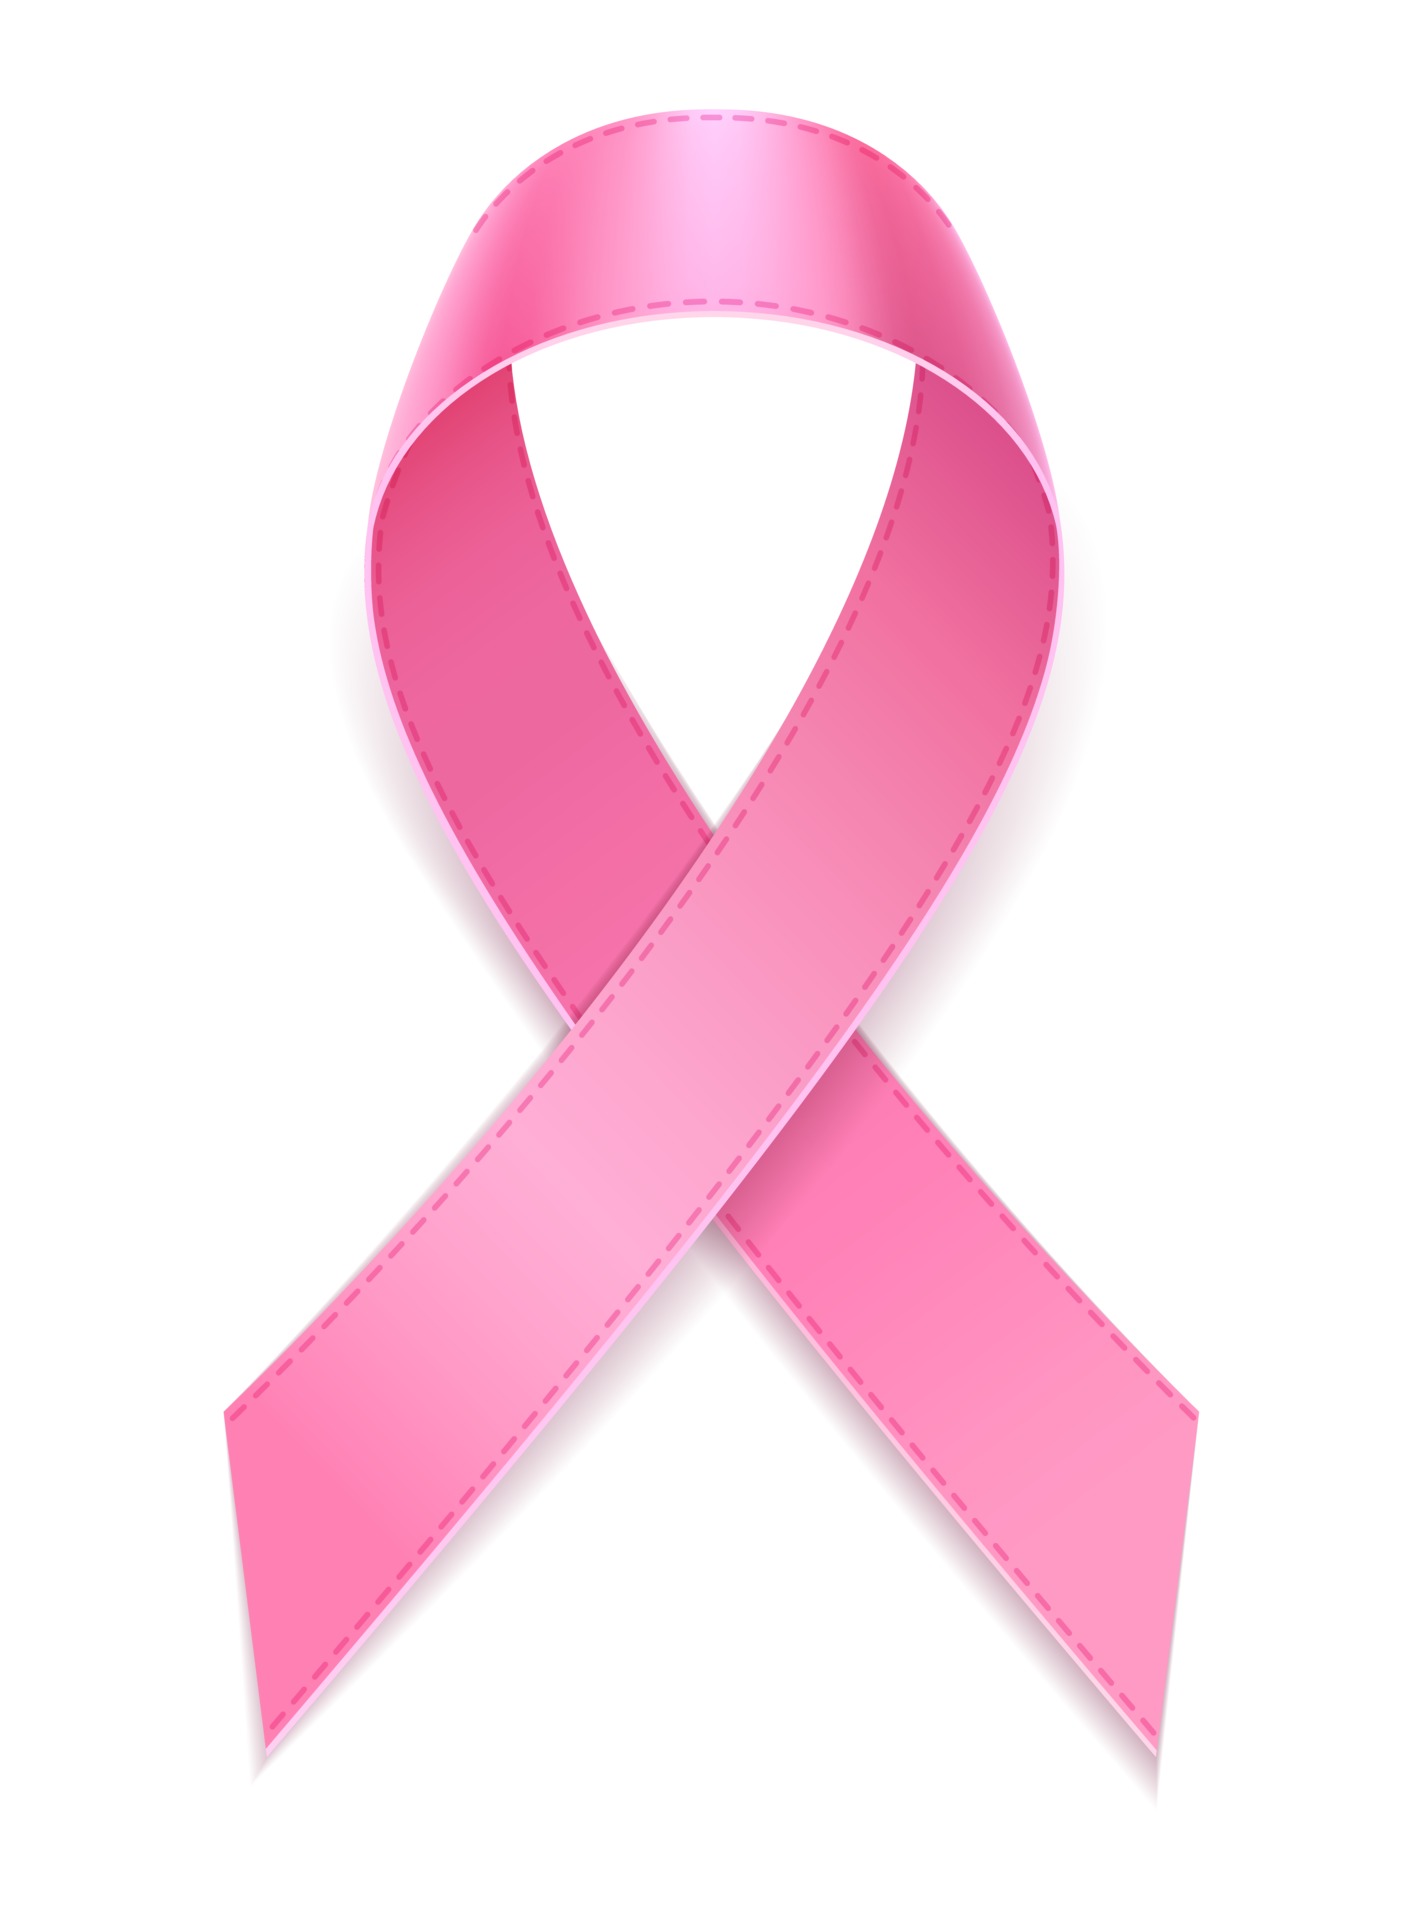 Hình minh họa vector chất lượng cao sẽ đem đến cho bạn trải nghiệm hoàn toàn mới về một trong những biểu tượng quan trọng nhất của phong trào hỗ trợ ung thư vú.